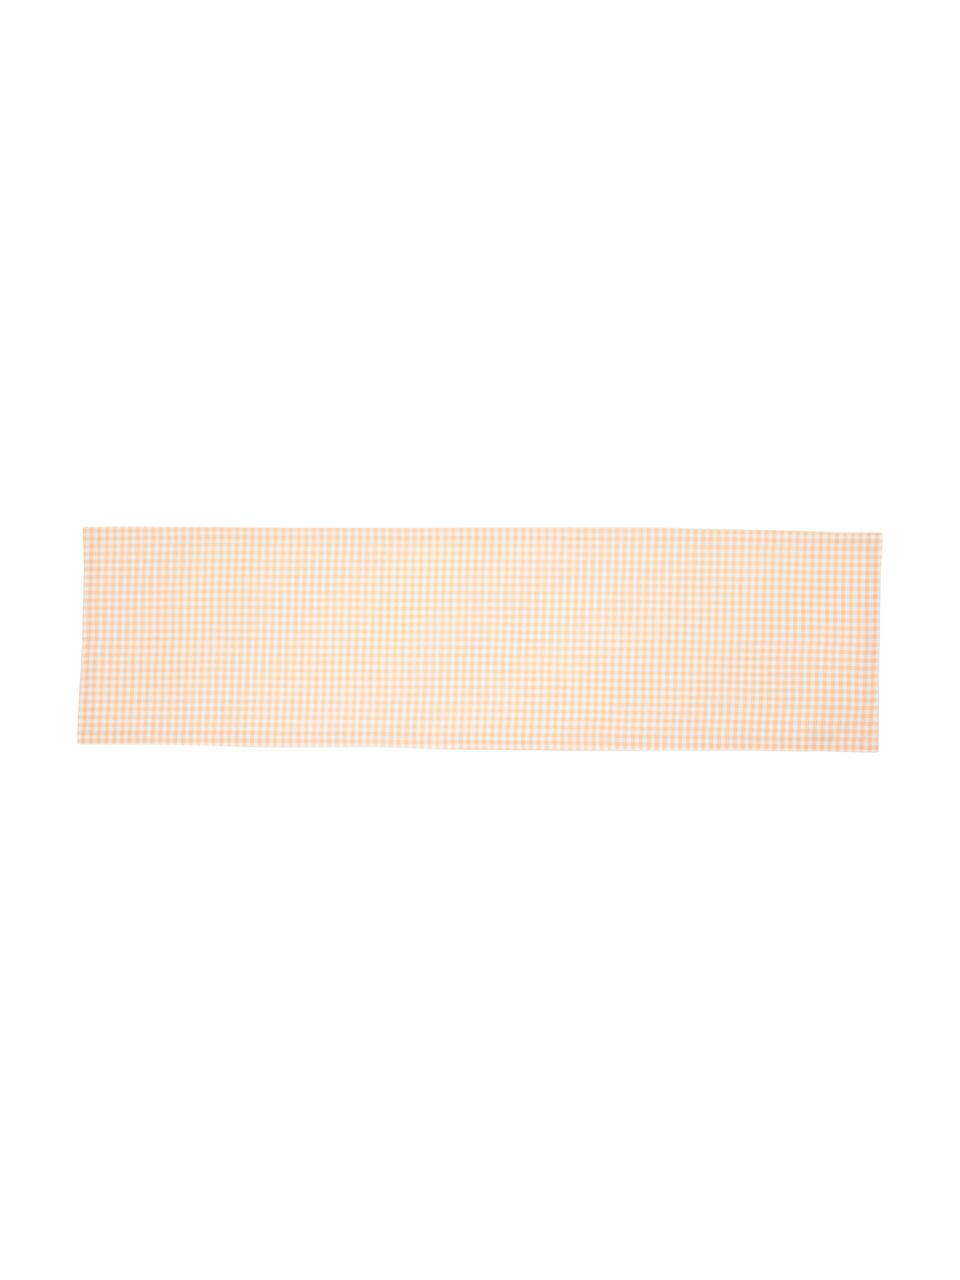 Baumwoll-Tischläufer Vicky mit Karo-Muster, 100 % Baumwolle, Lachsfarben, Weiss, B 40 x L 145 cm